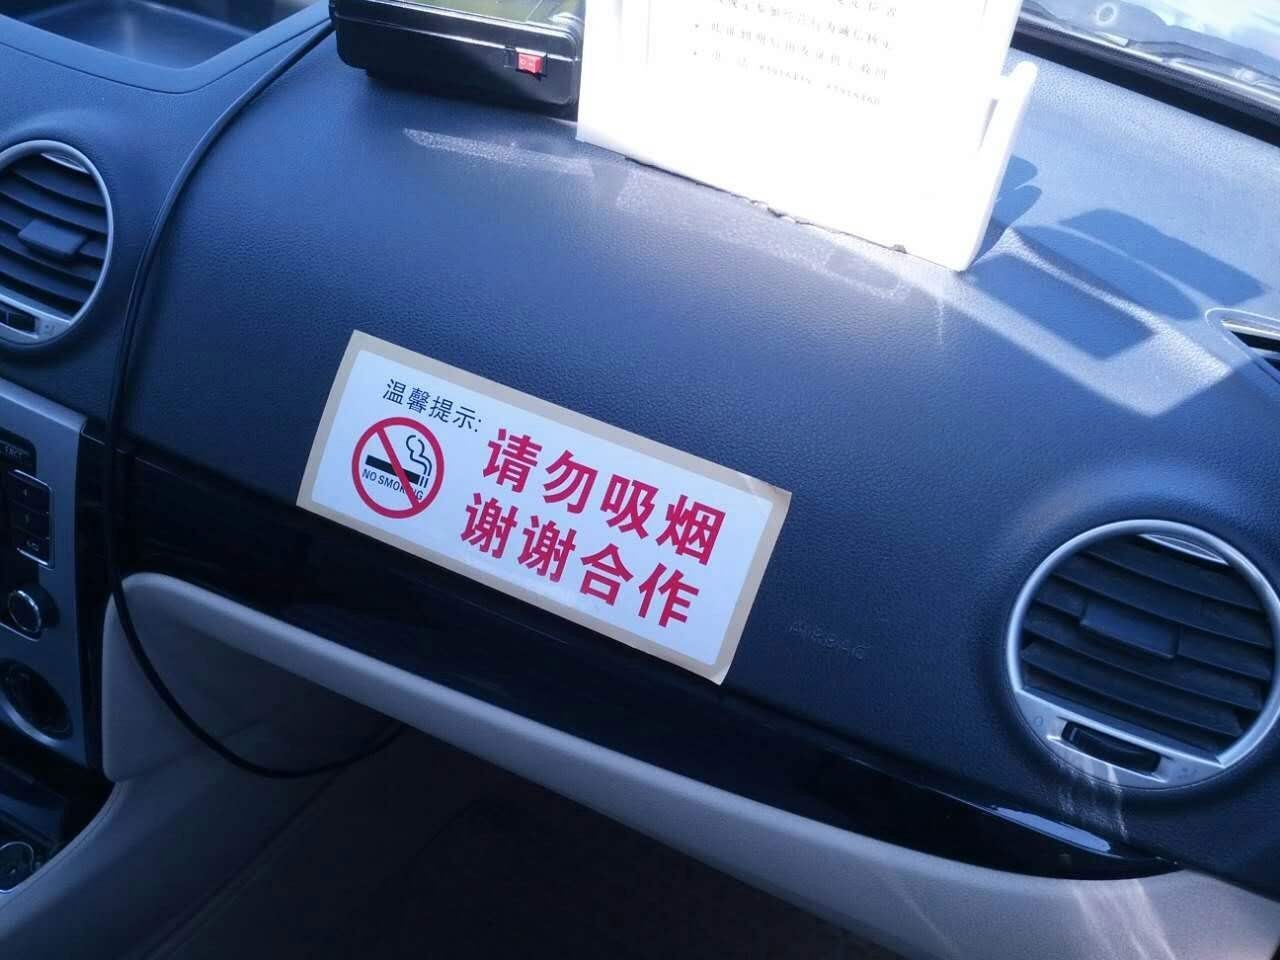 调查 | 7万辆出租车禁烟,北京这回动真格的了!车